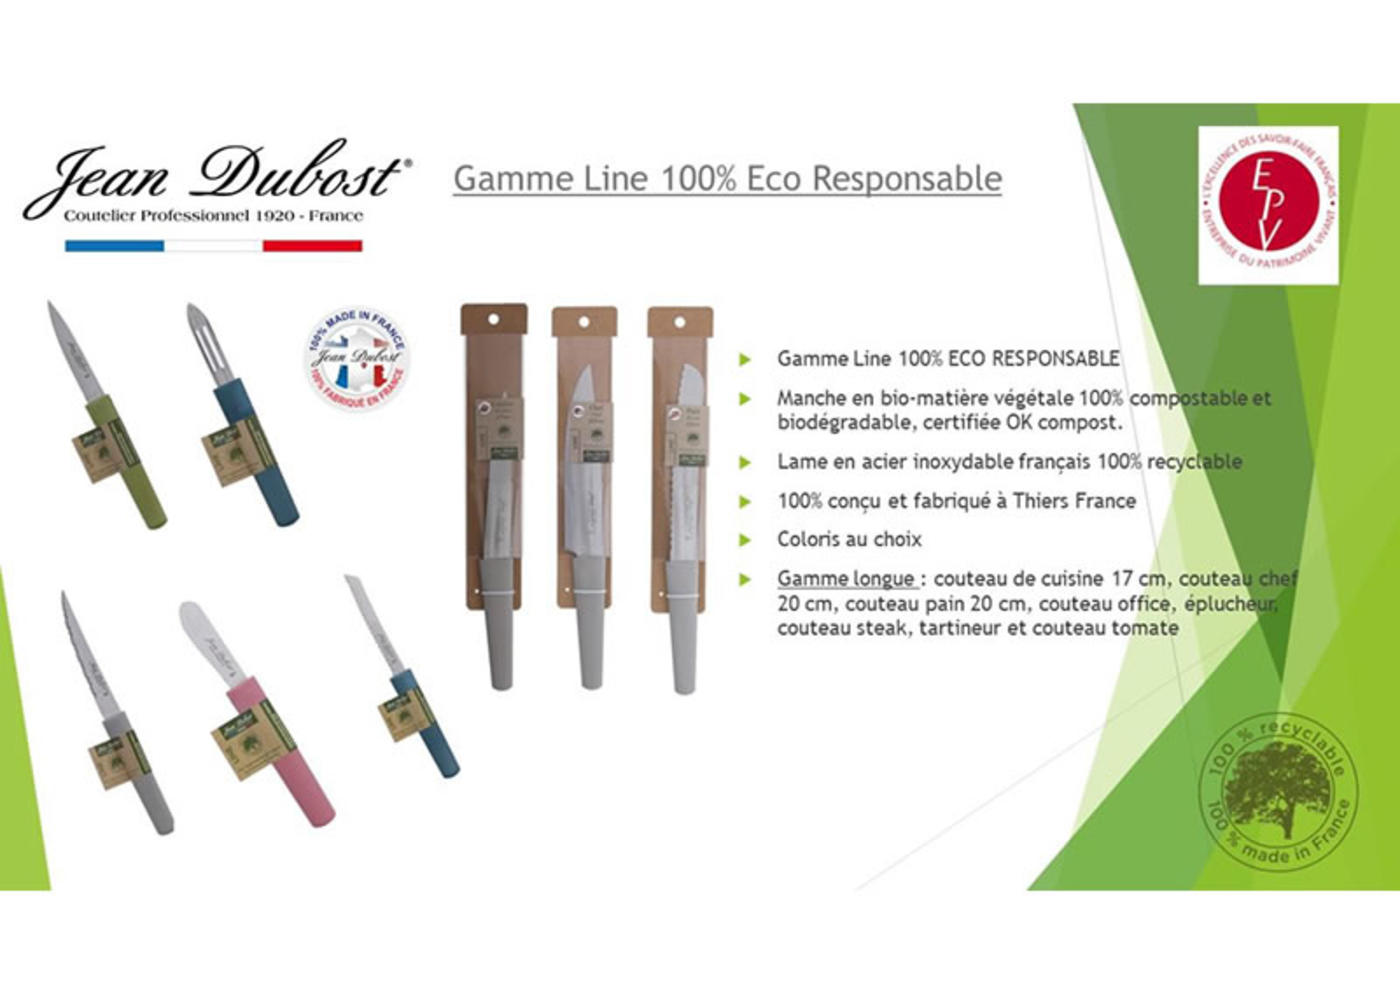 Jean Dubost gamme Line Eco Responsable descriptif